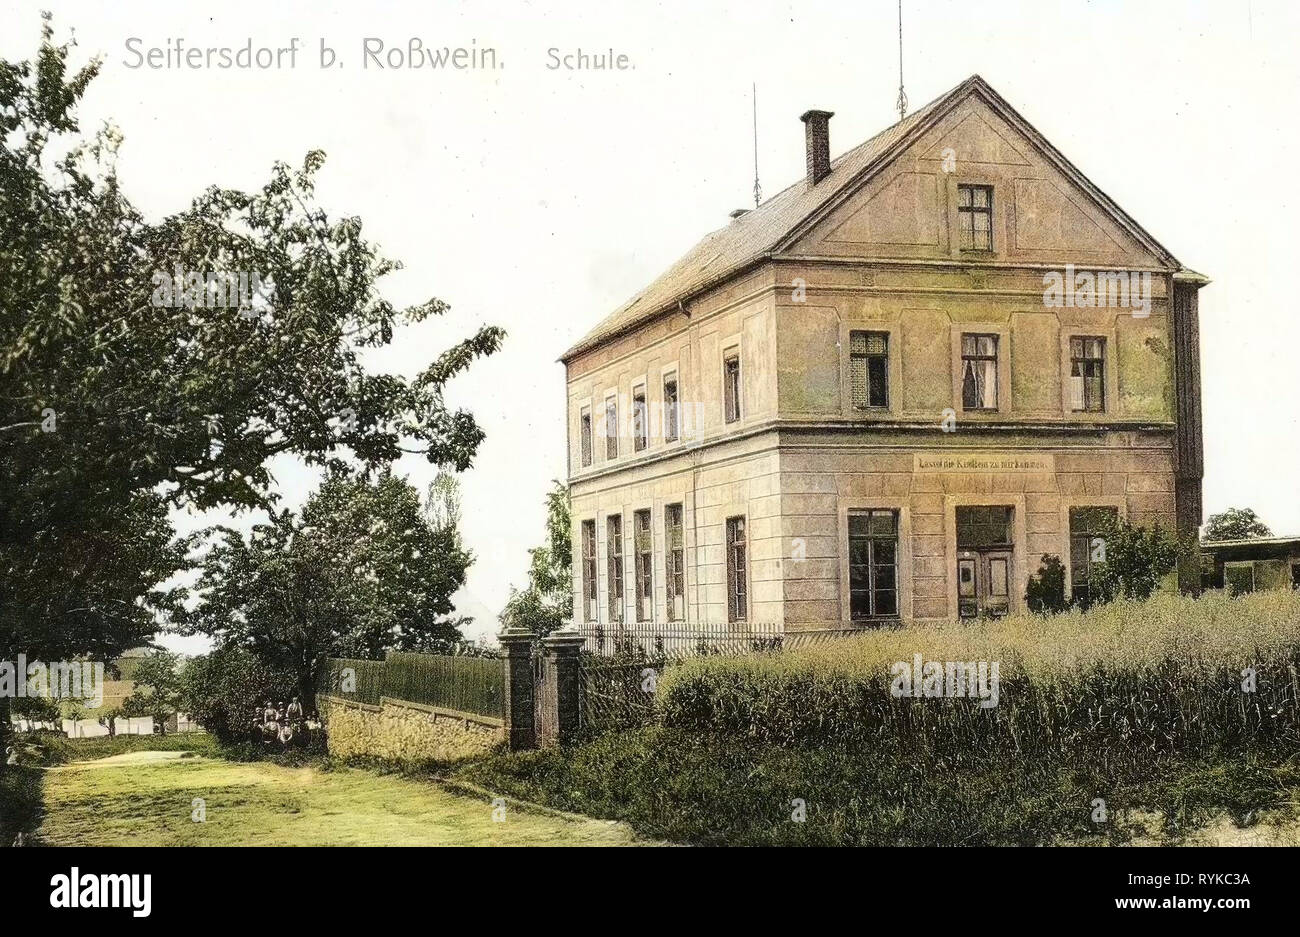 Schulen im Landkreis Mittelsachsen, Gebäude in Roßwein, 1912, Landkreis Mittelsachsen, Seifersdorf (Roßwein), Schule, Deutschland Stockfoto